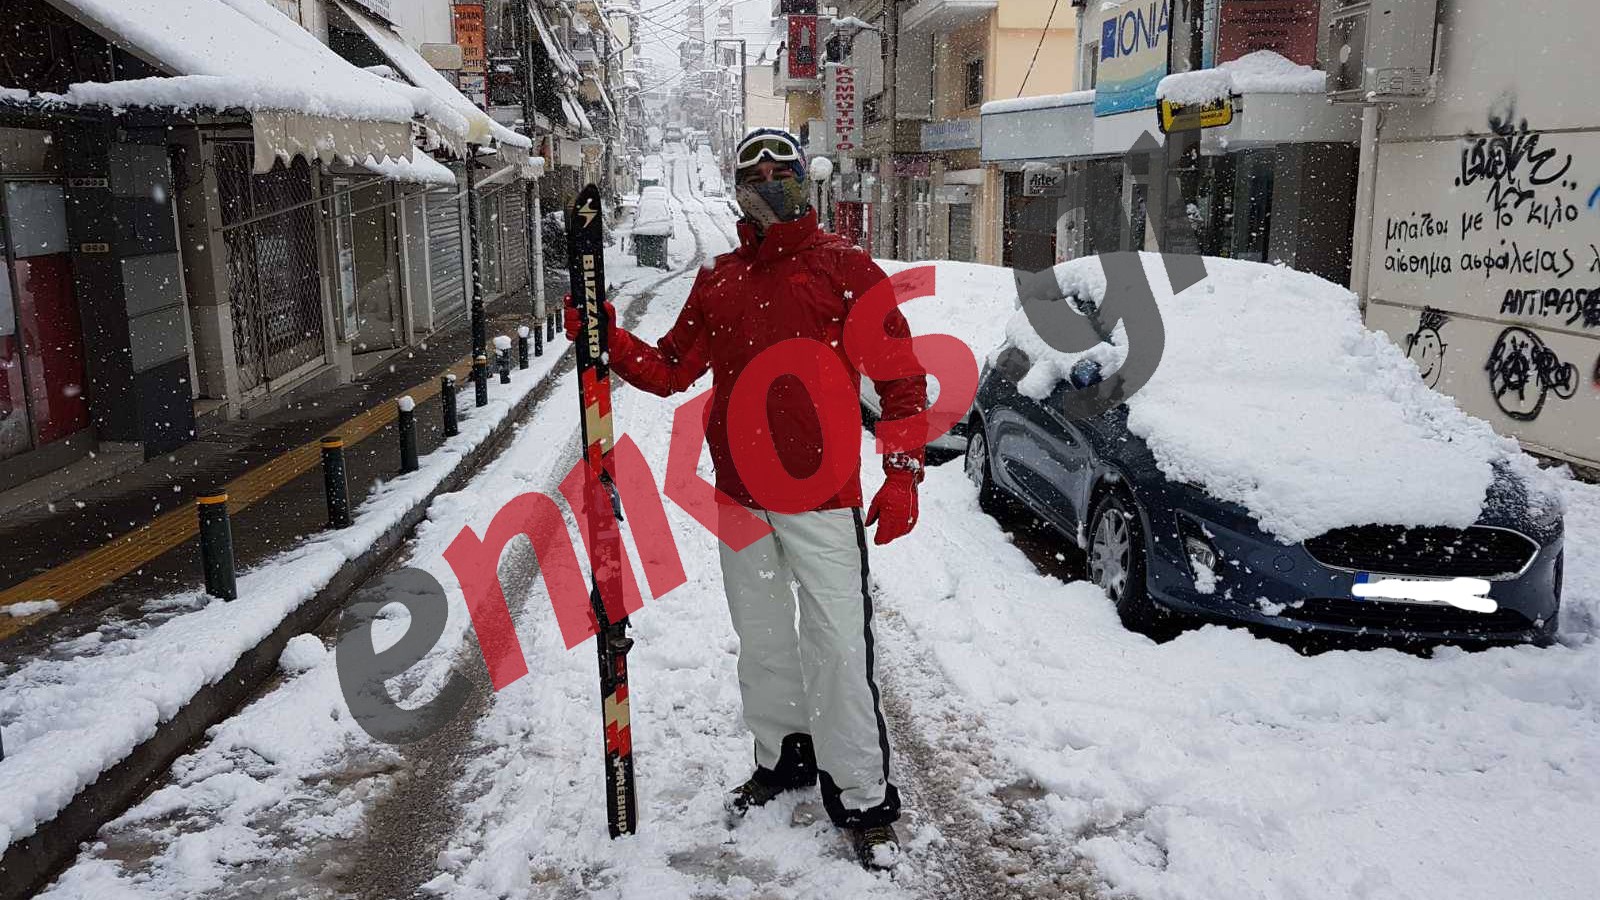 “Μήδεια”: Η Νέα Ιωνία… χιονοδρομικό κέντρο – Πήρε τα χιονοπέδιλα και έκανε σκι στο δρόμο – ΦΩΤΟ αναγνώστη